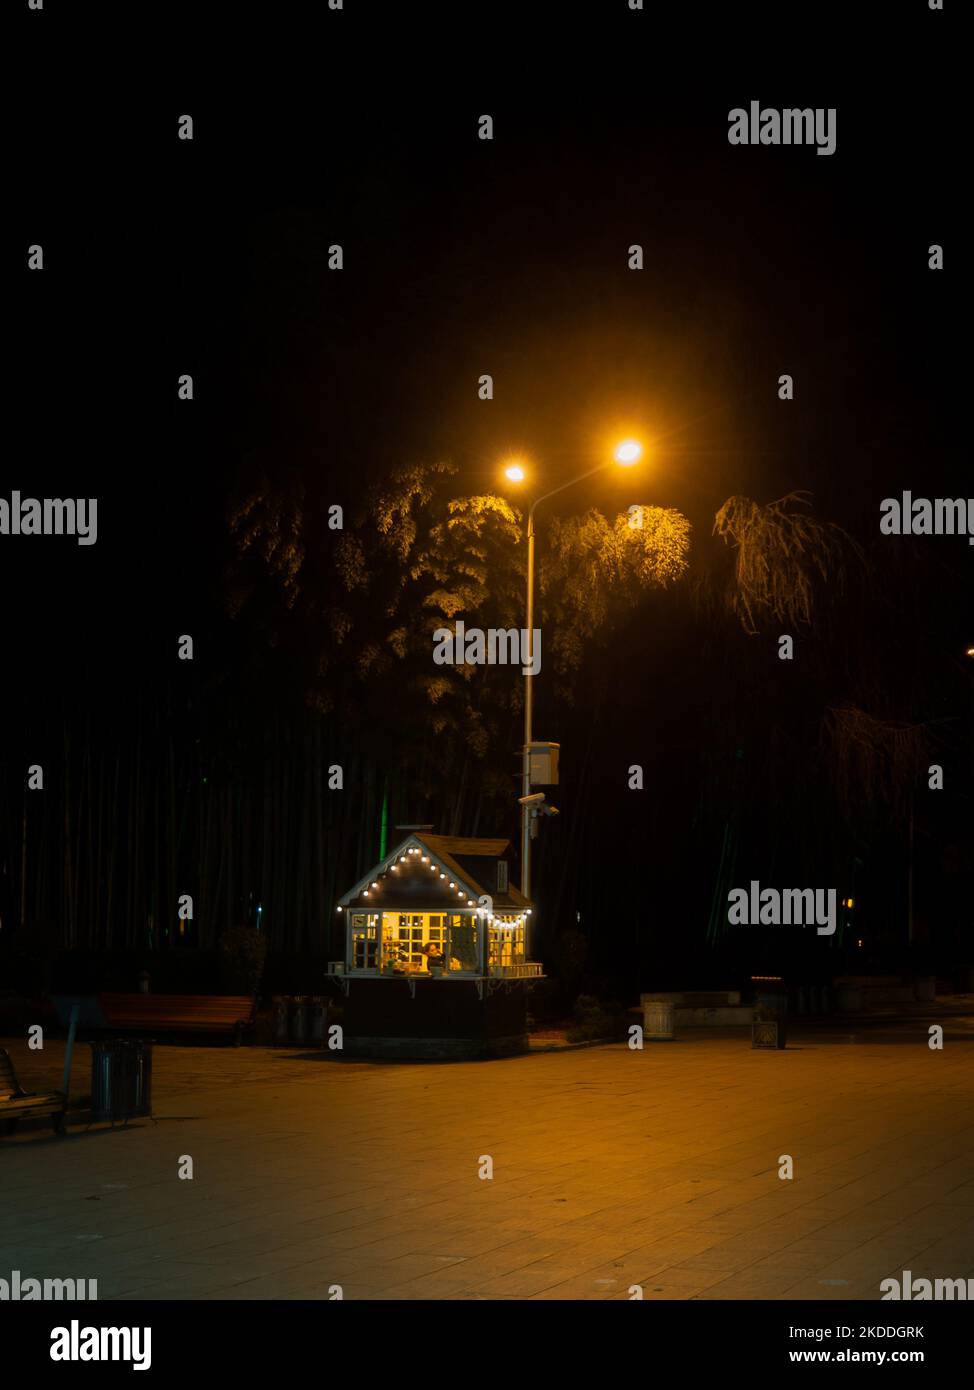 Bella stalla nel parco notturno. Illuminazione stradale. Vendita di beni di notte. luogo di villeggiatura Foto Stock